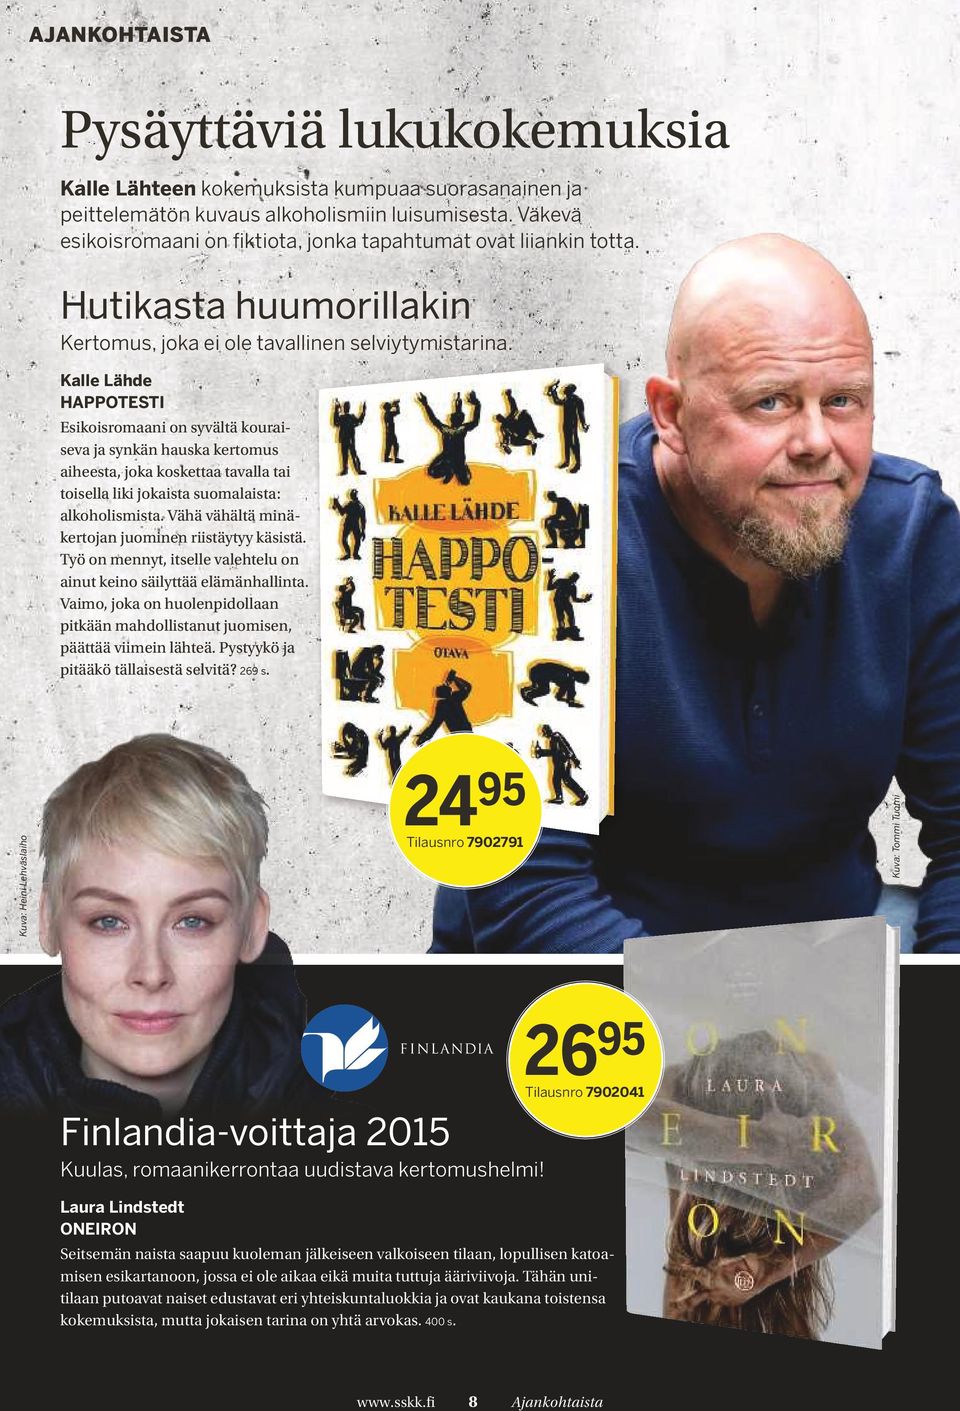 Kalle Lähde HAPPOTESTI Esikoisromaani on syvältä kouraiseva ja synkän hauska kertomus aiheesta, joka koskettaa tavalla tai toisella liki jokaista suomalaista: alkoholismista.